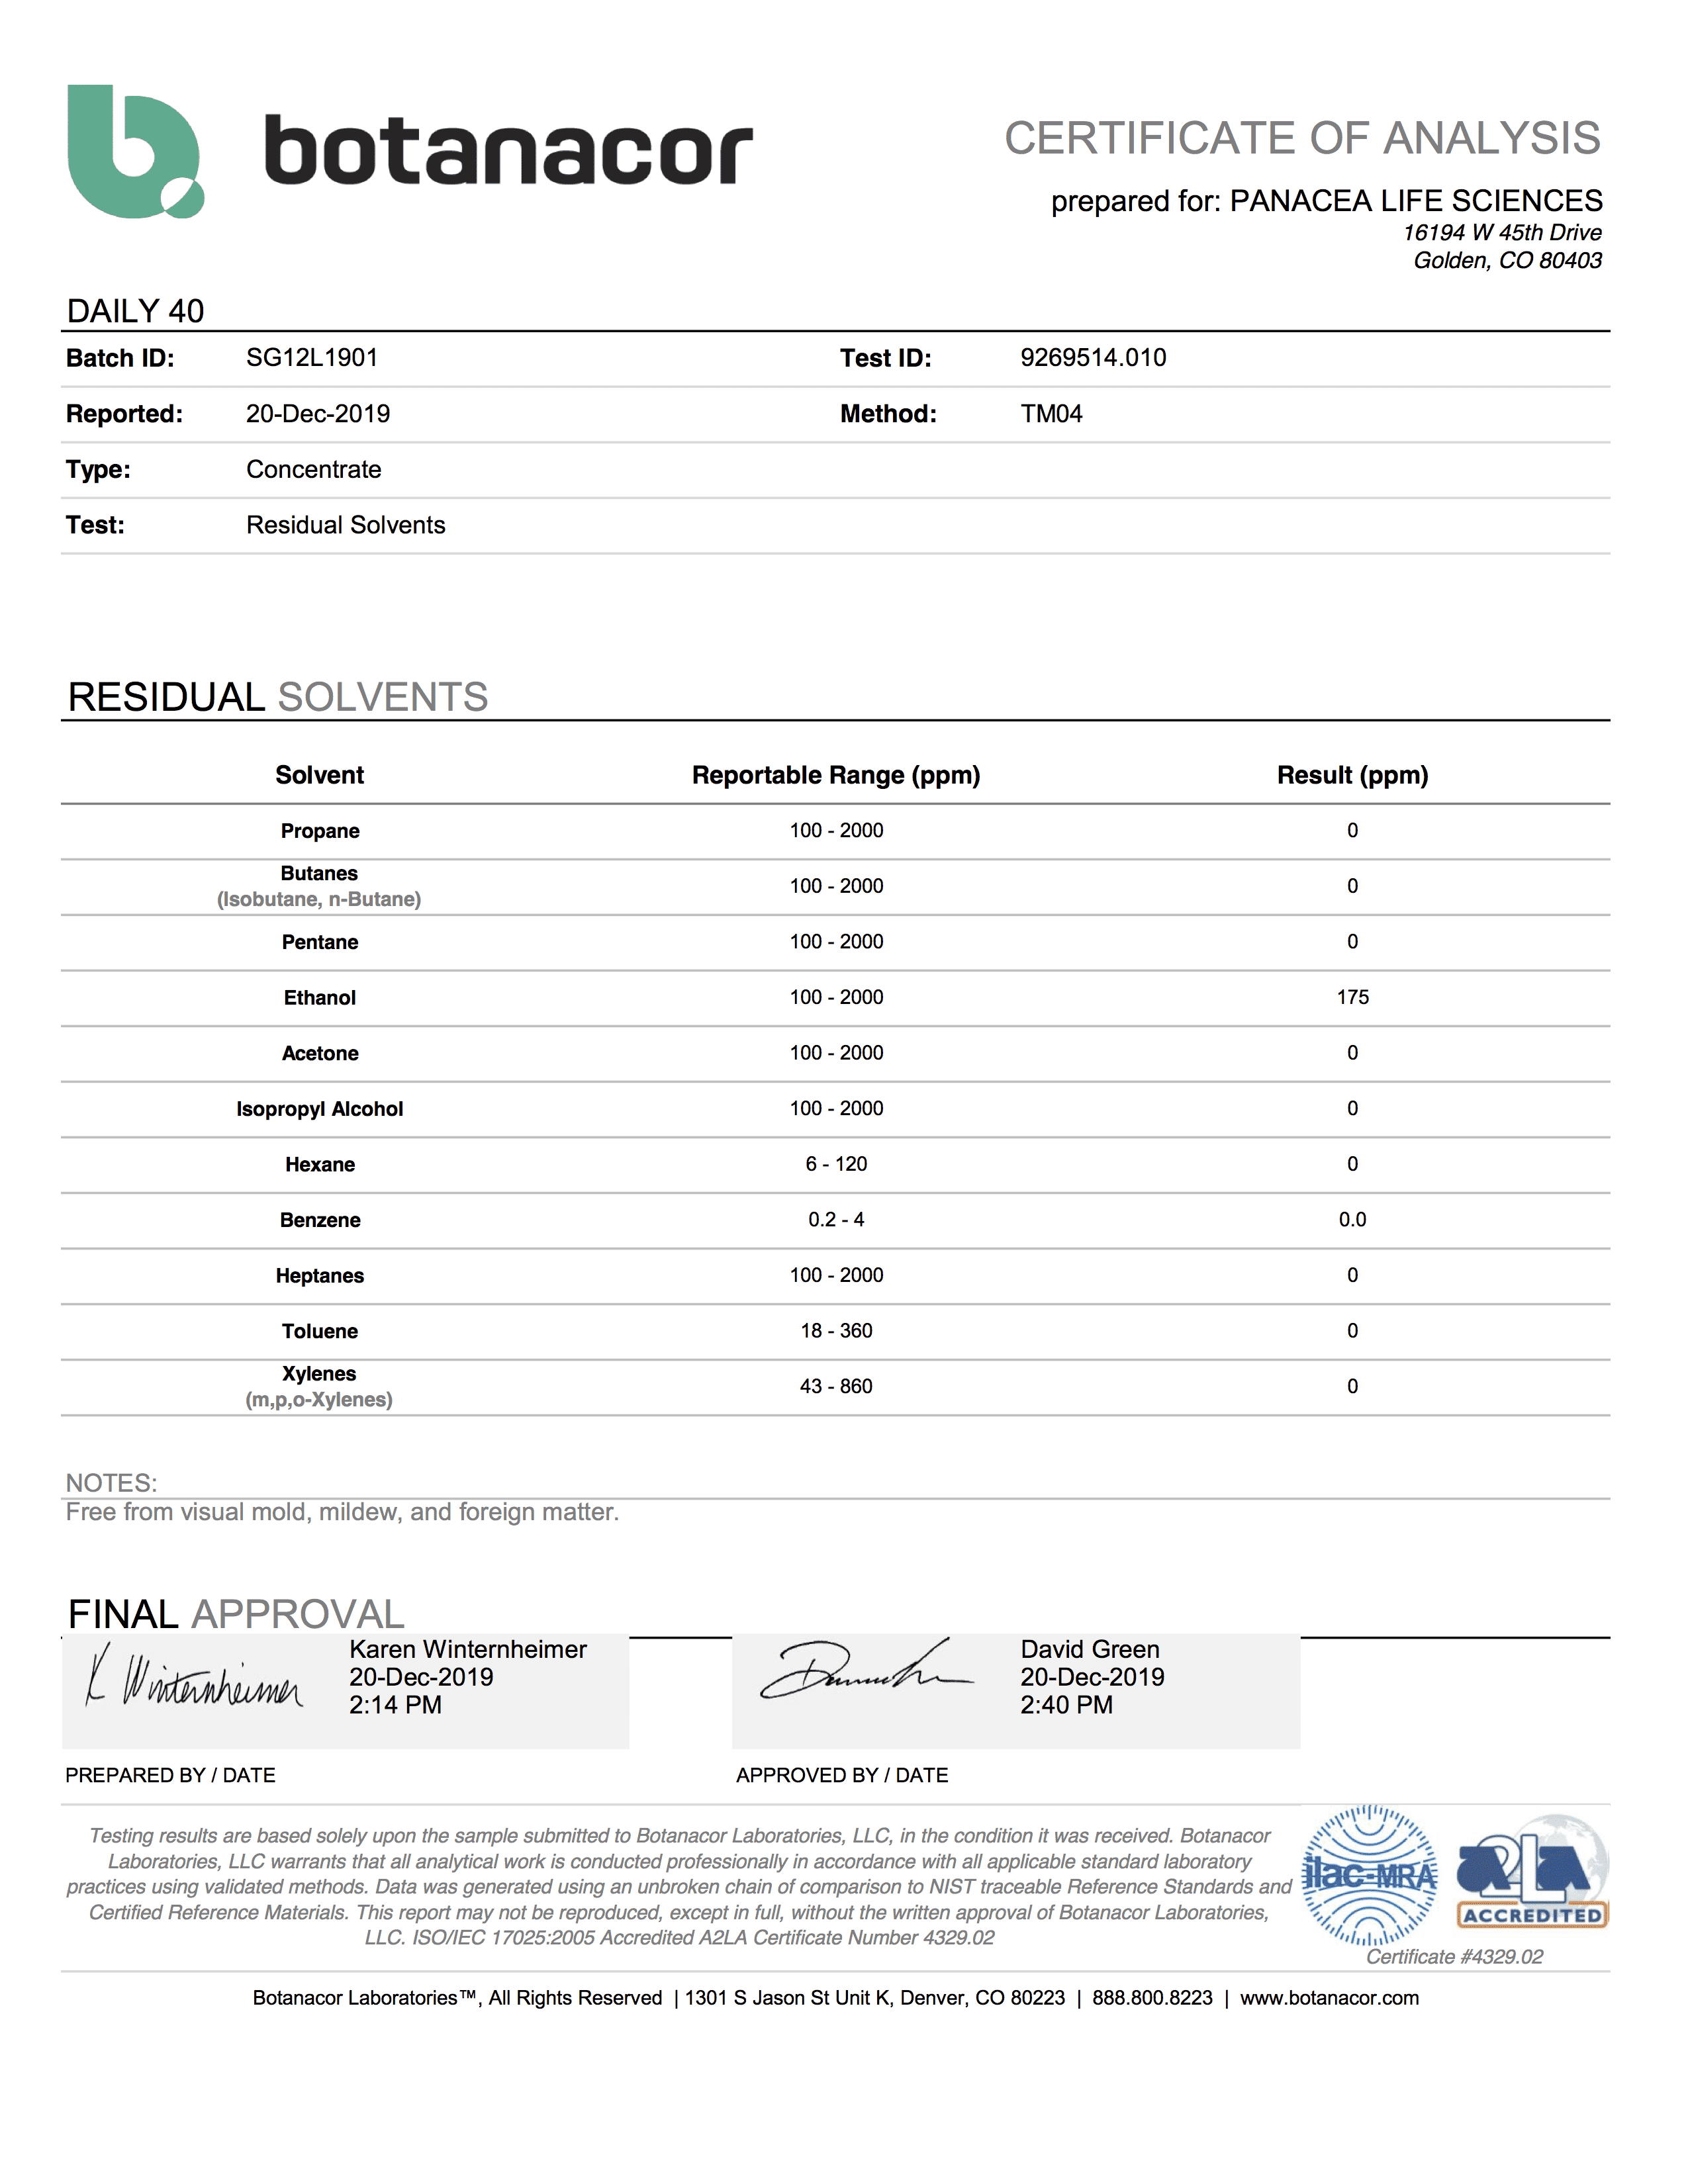 Panacea Test Results - Batch SG12L1901